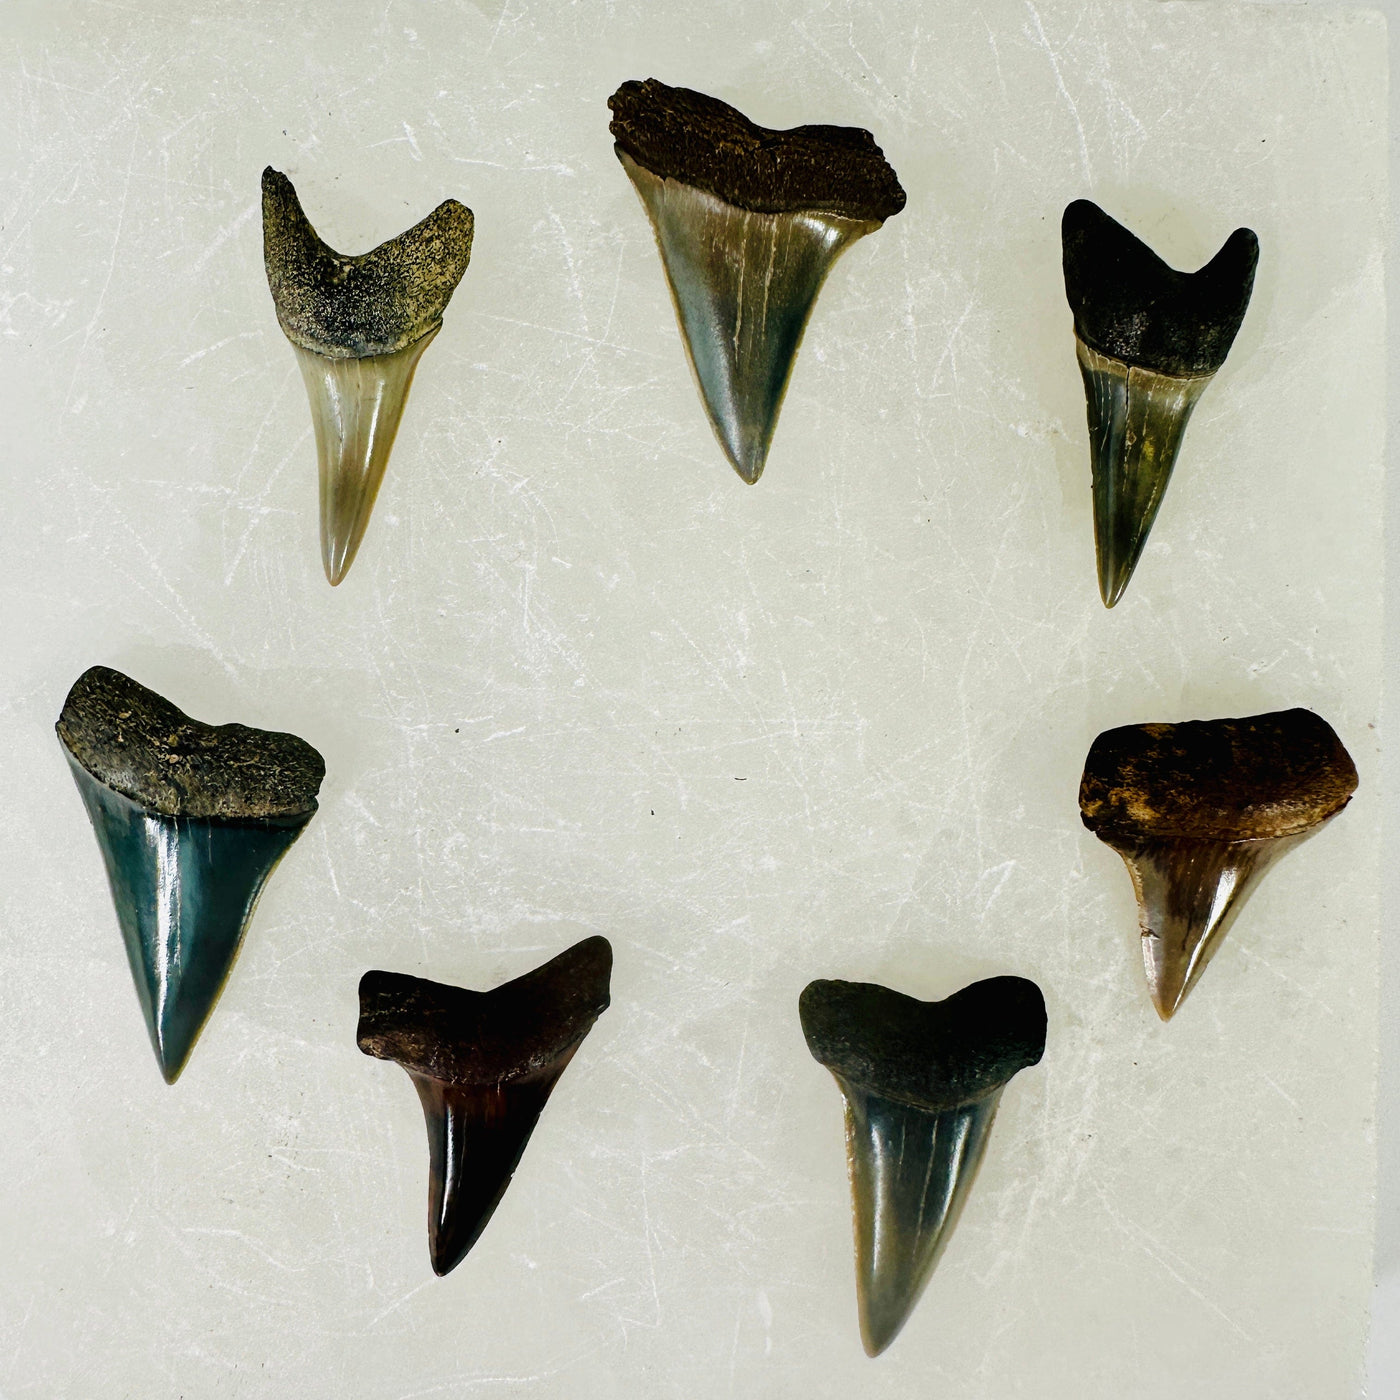 Mako Teeth - Polished Shark Teeth Fossils - You Choose all variants